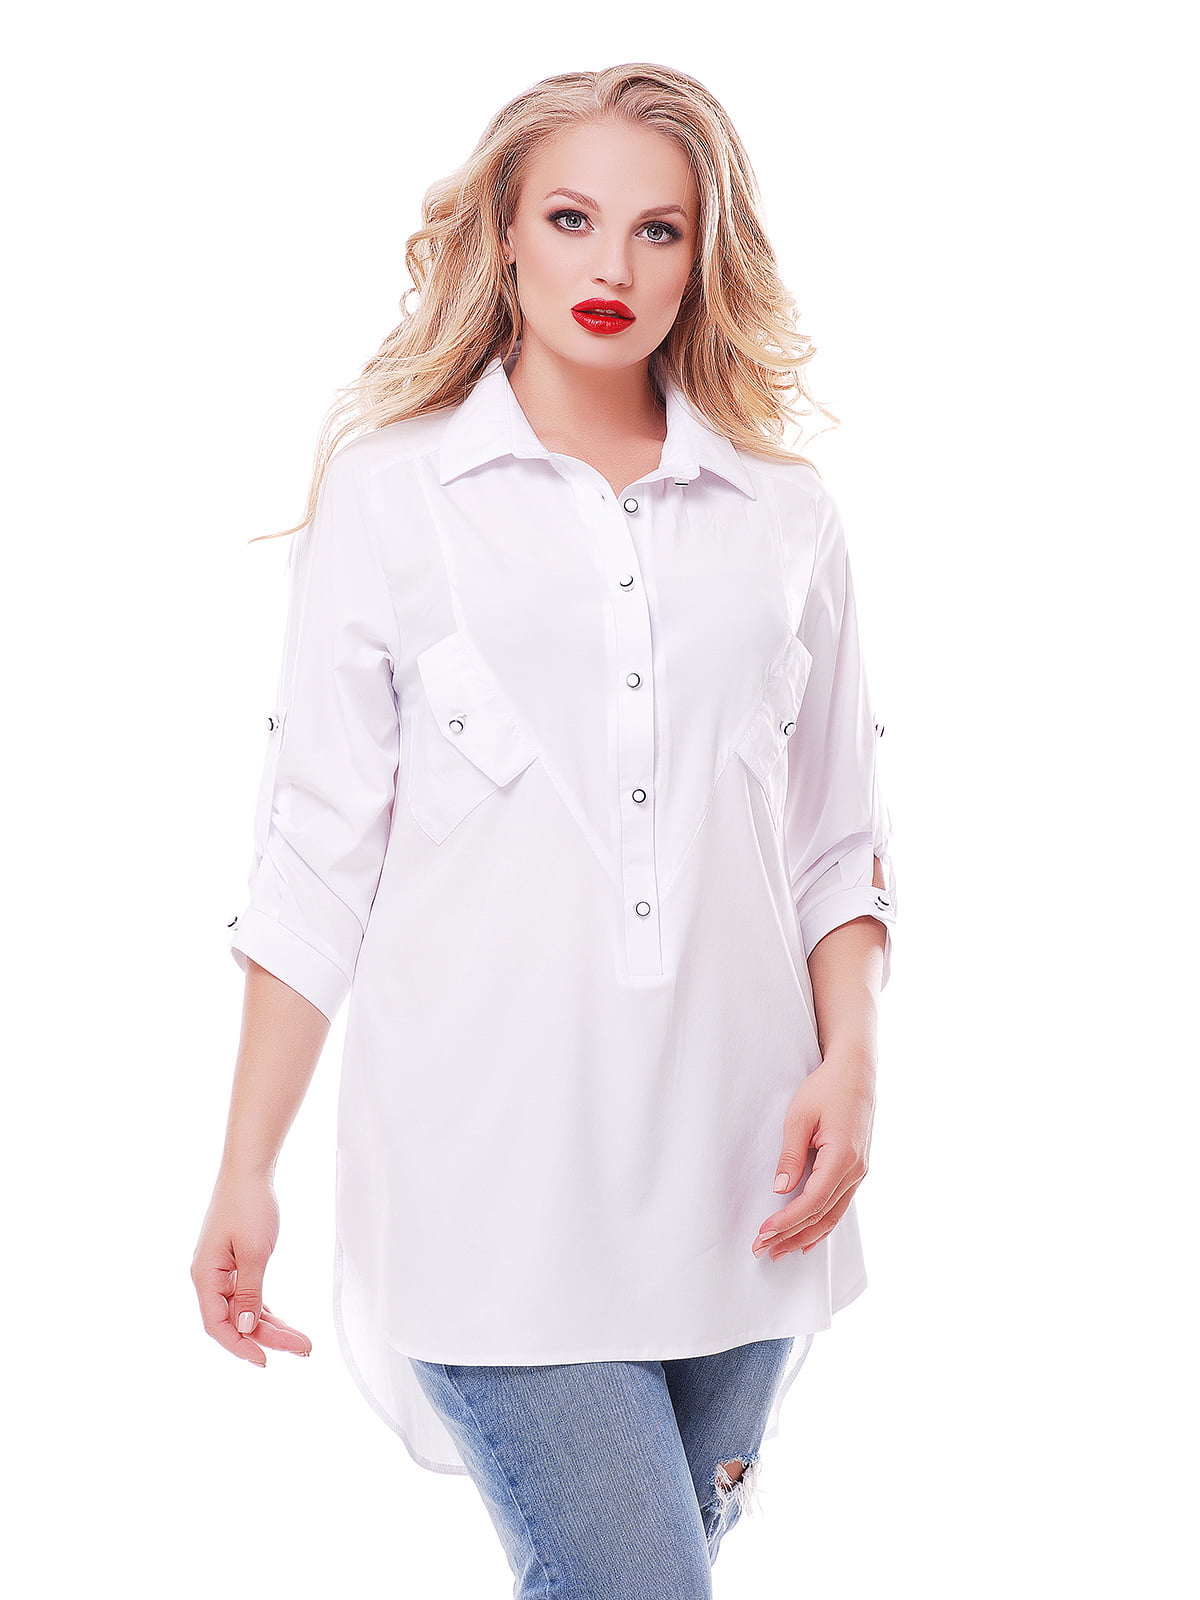 Длинные блузки больших размеров. Рубашка женская. Белая рубашка женская. Женские блузки и рубашки. Удлиненная рубашка.